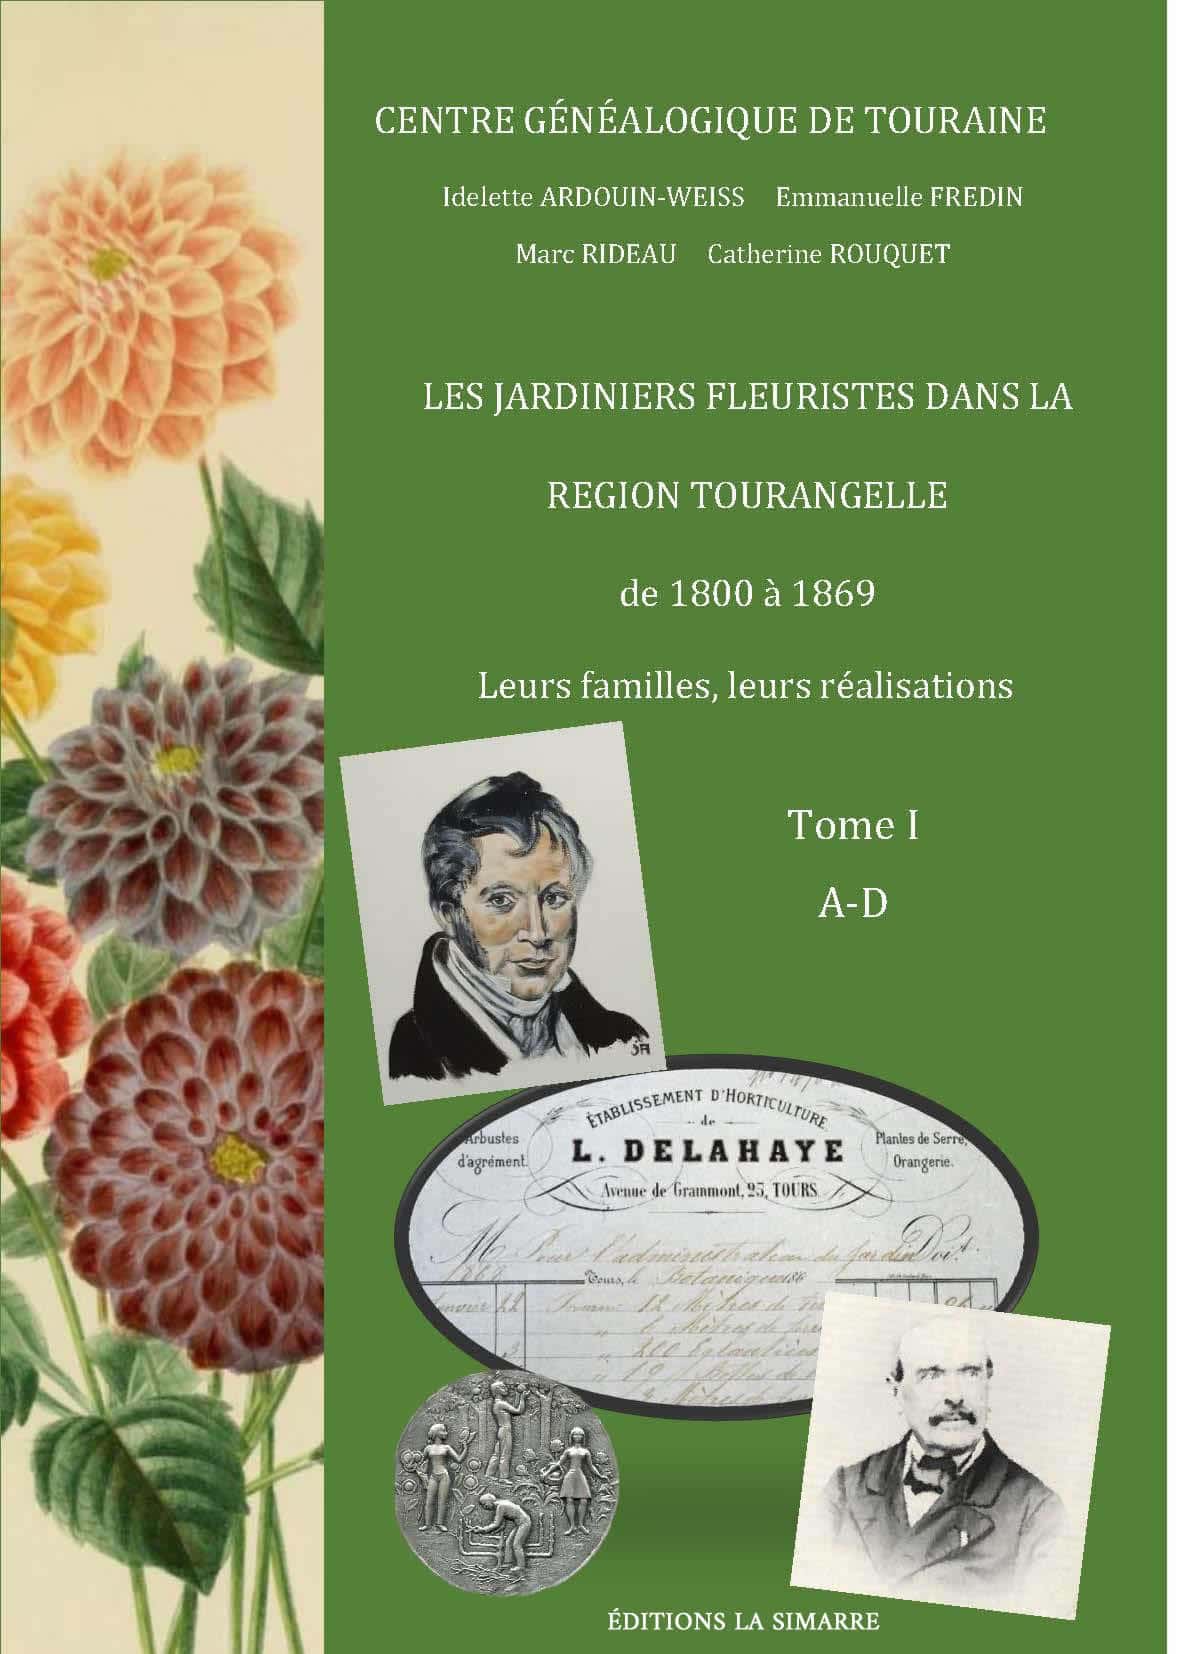 Les jardiniers fleuristes dans la région tourangelle de 1800 à 1869 - Tome I - Éditions La Simarre - 20 €